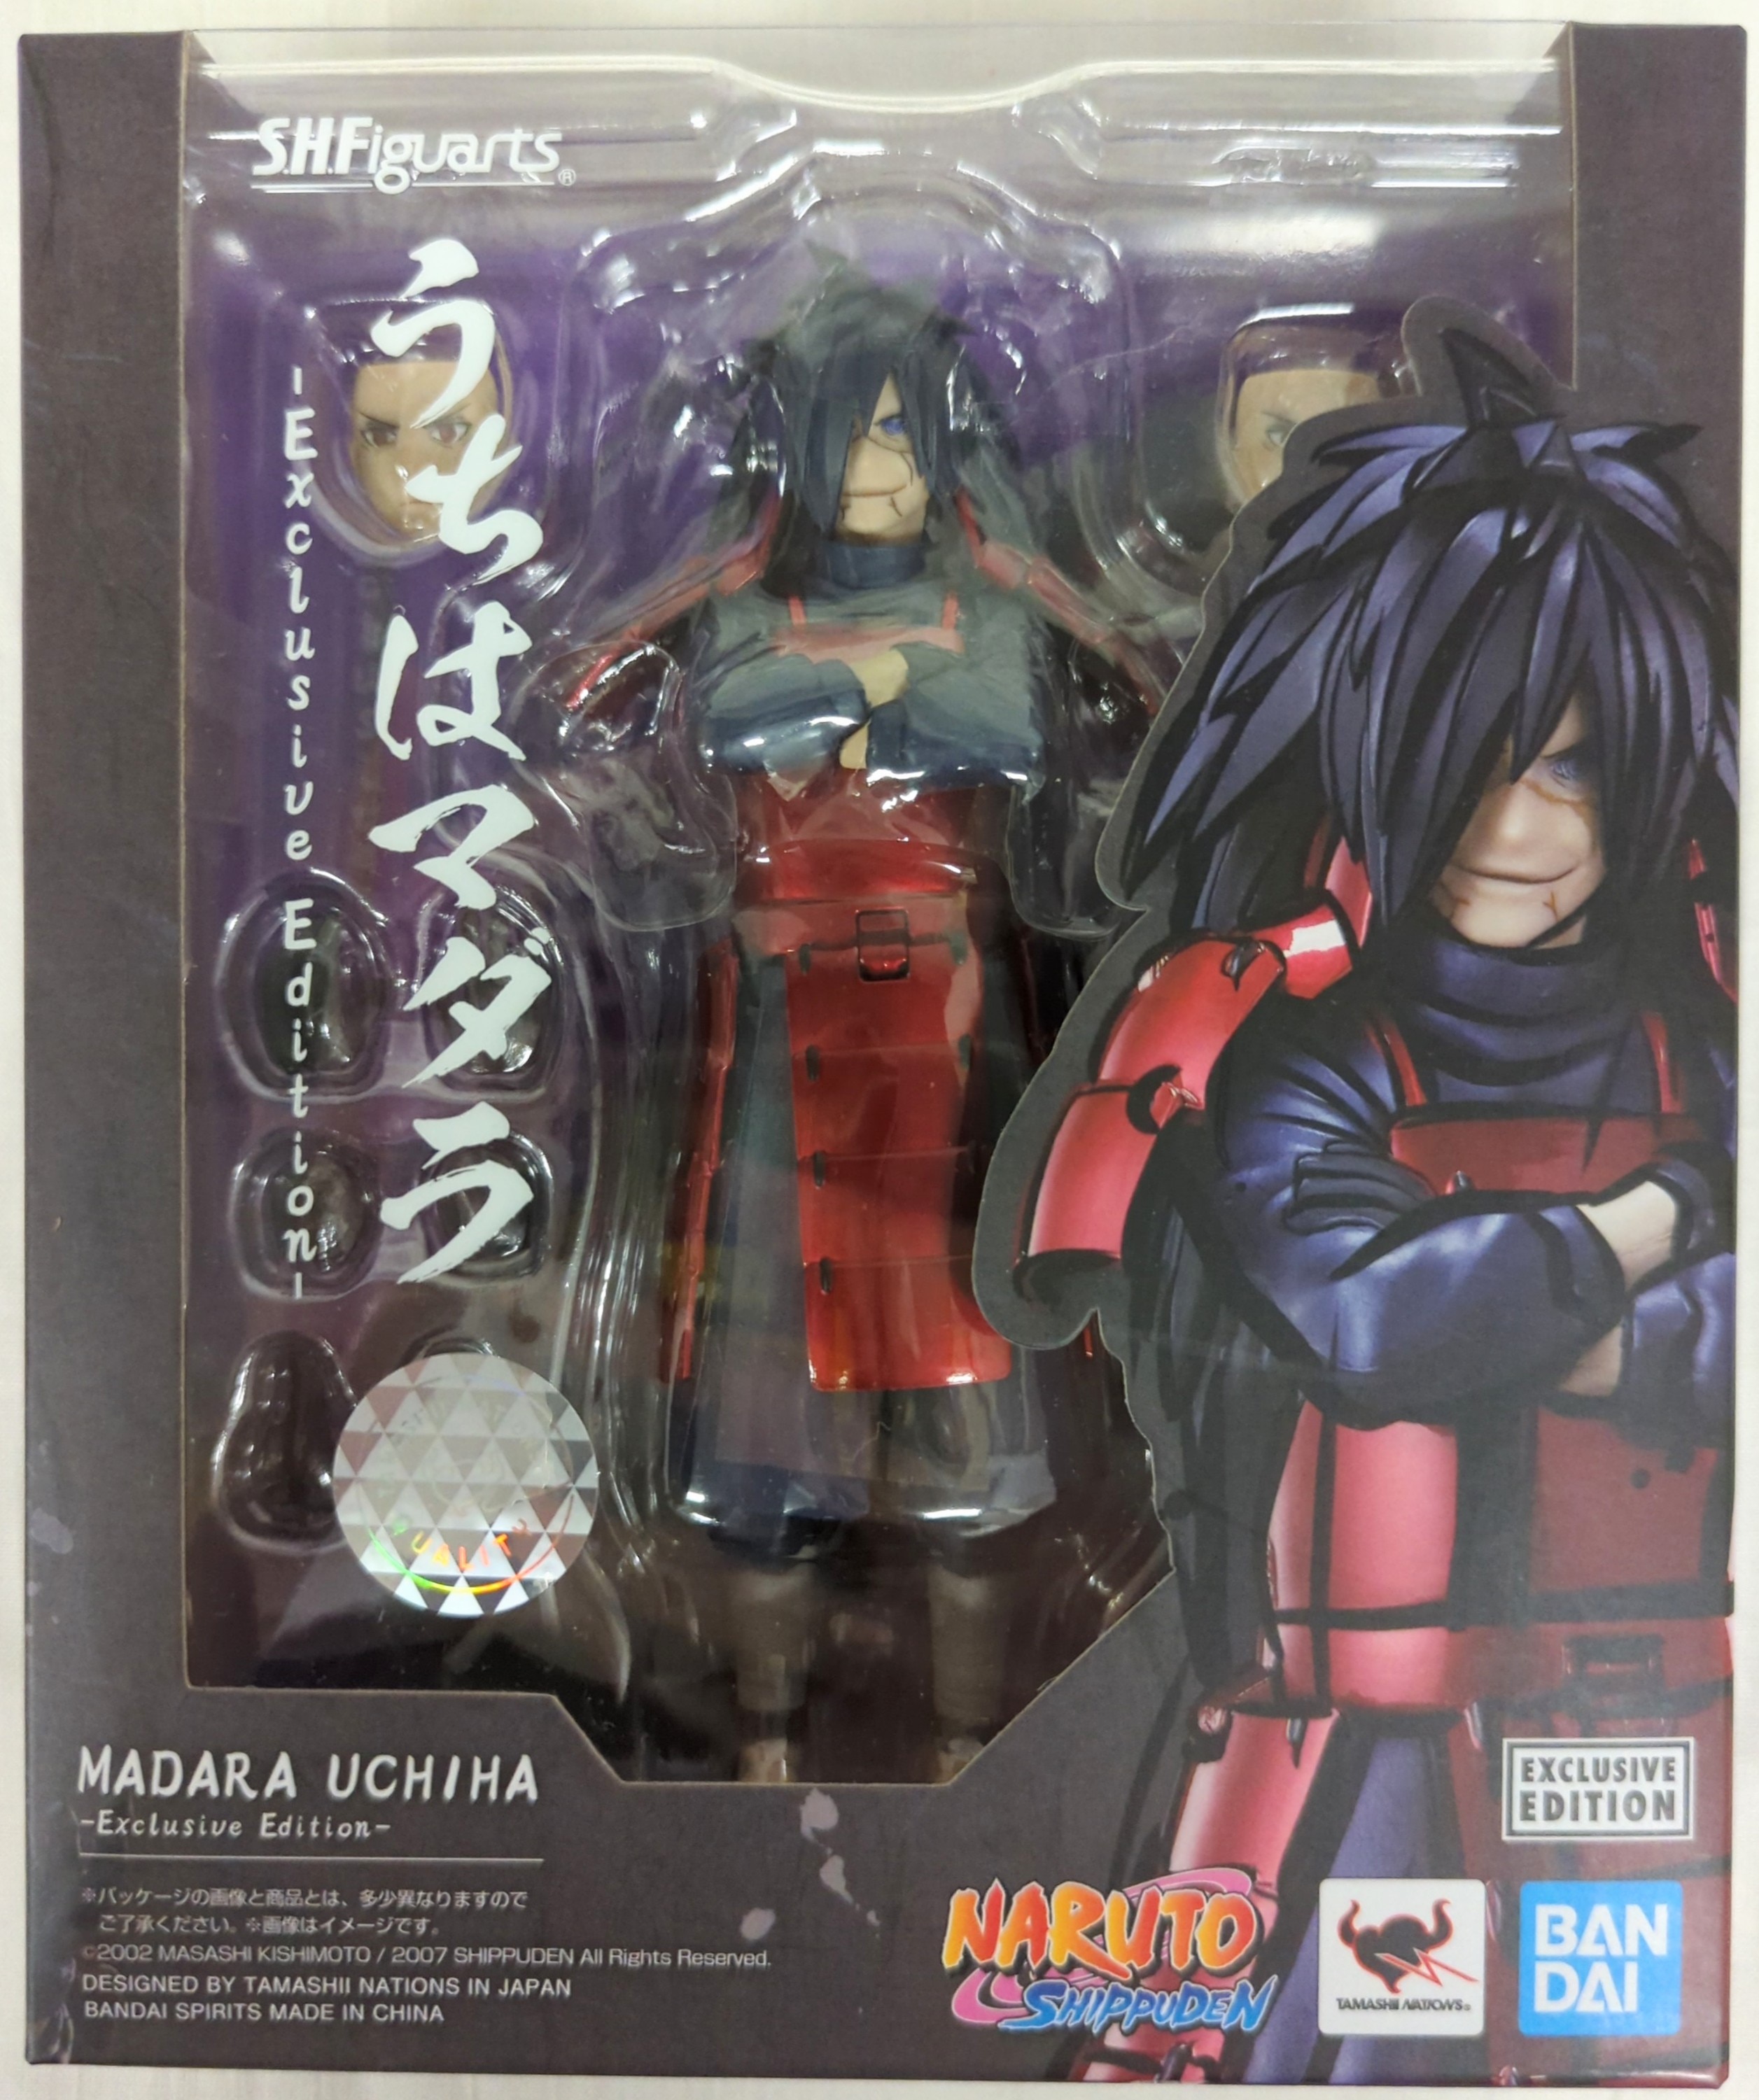 Naruto Shippuden - Bandai S.H.Figuarts - Madara Uchiha